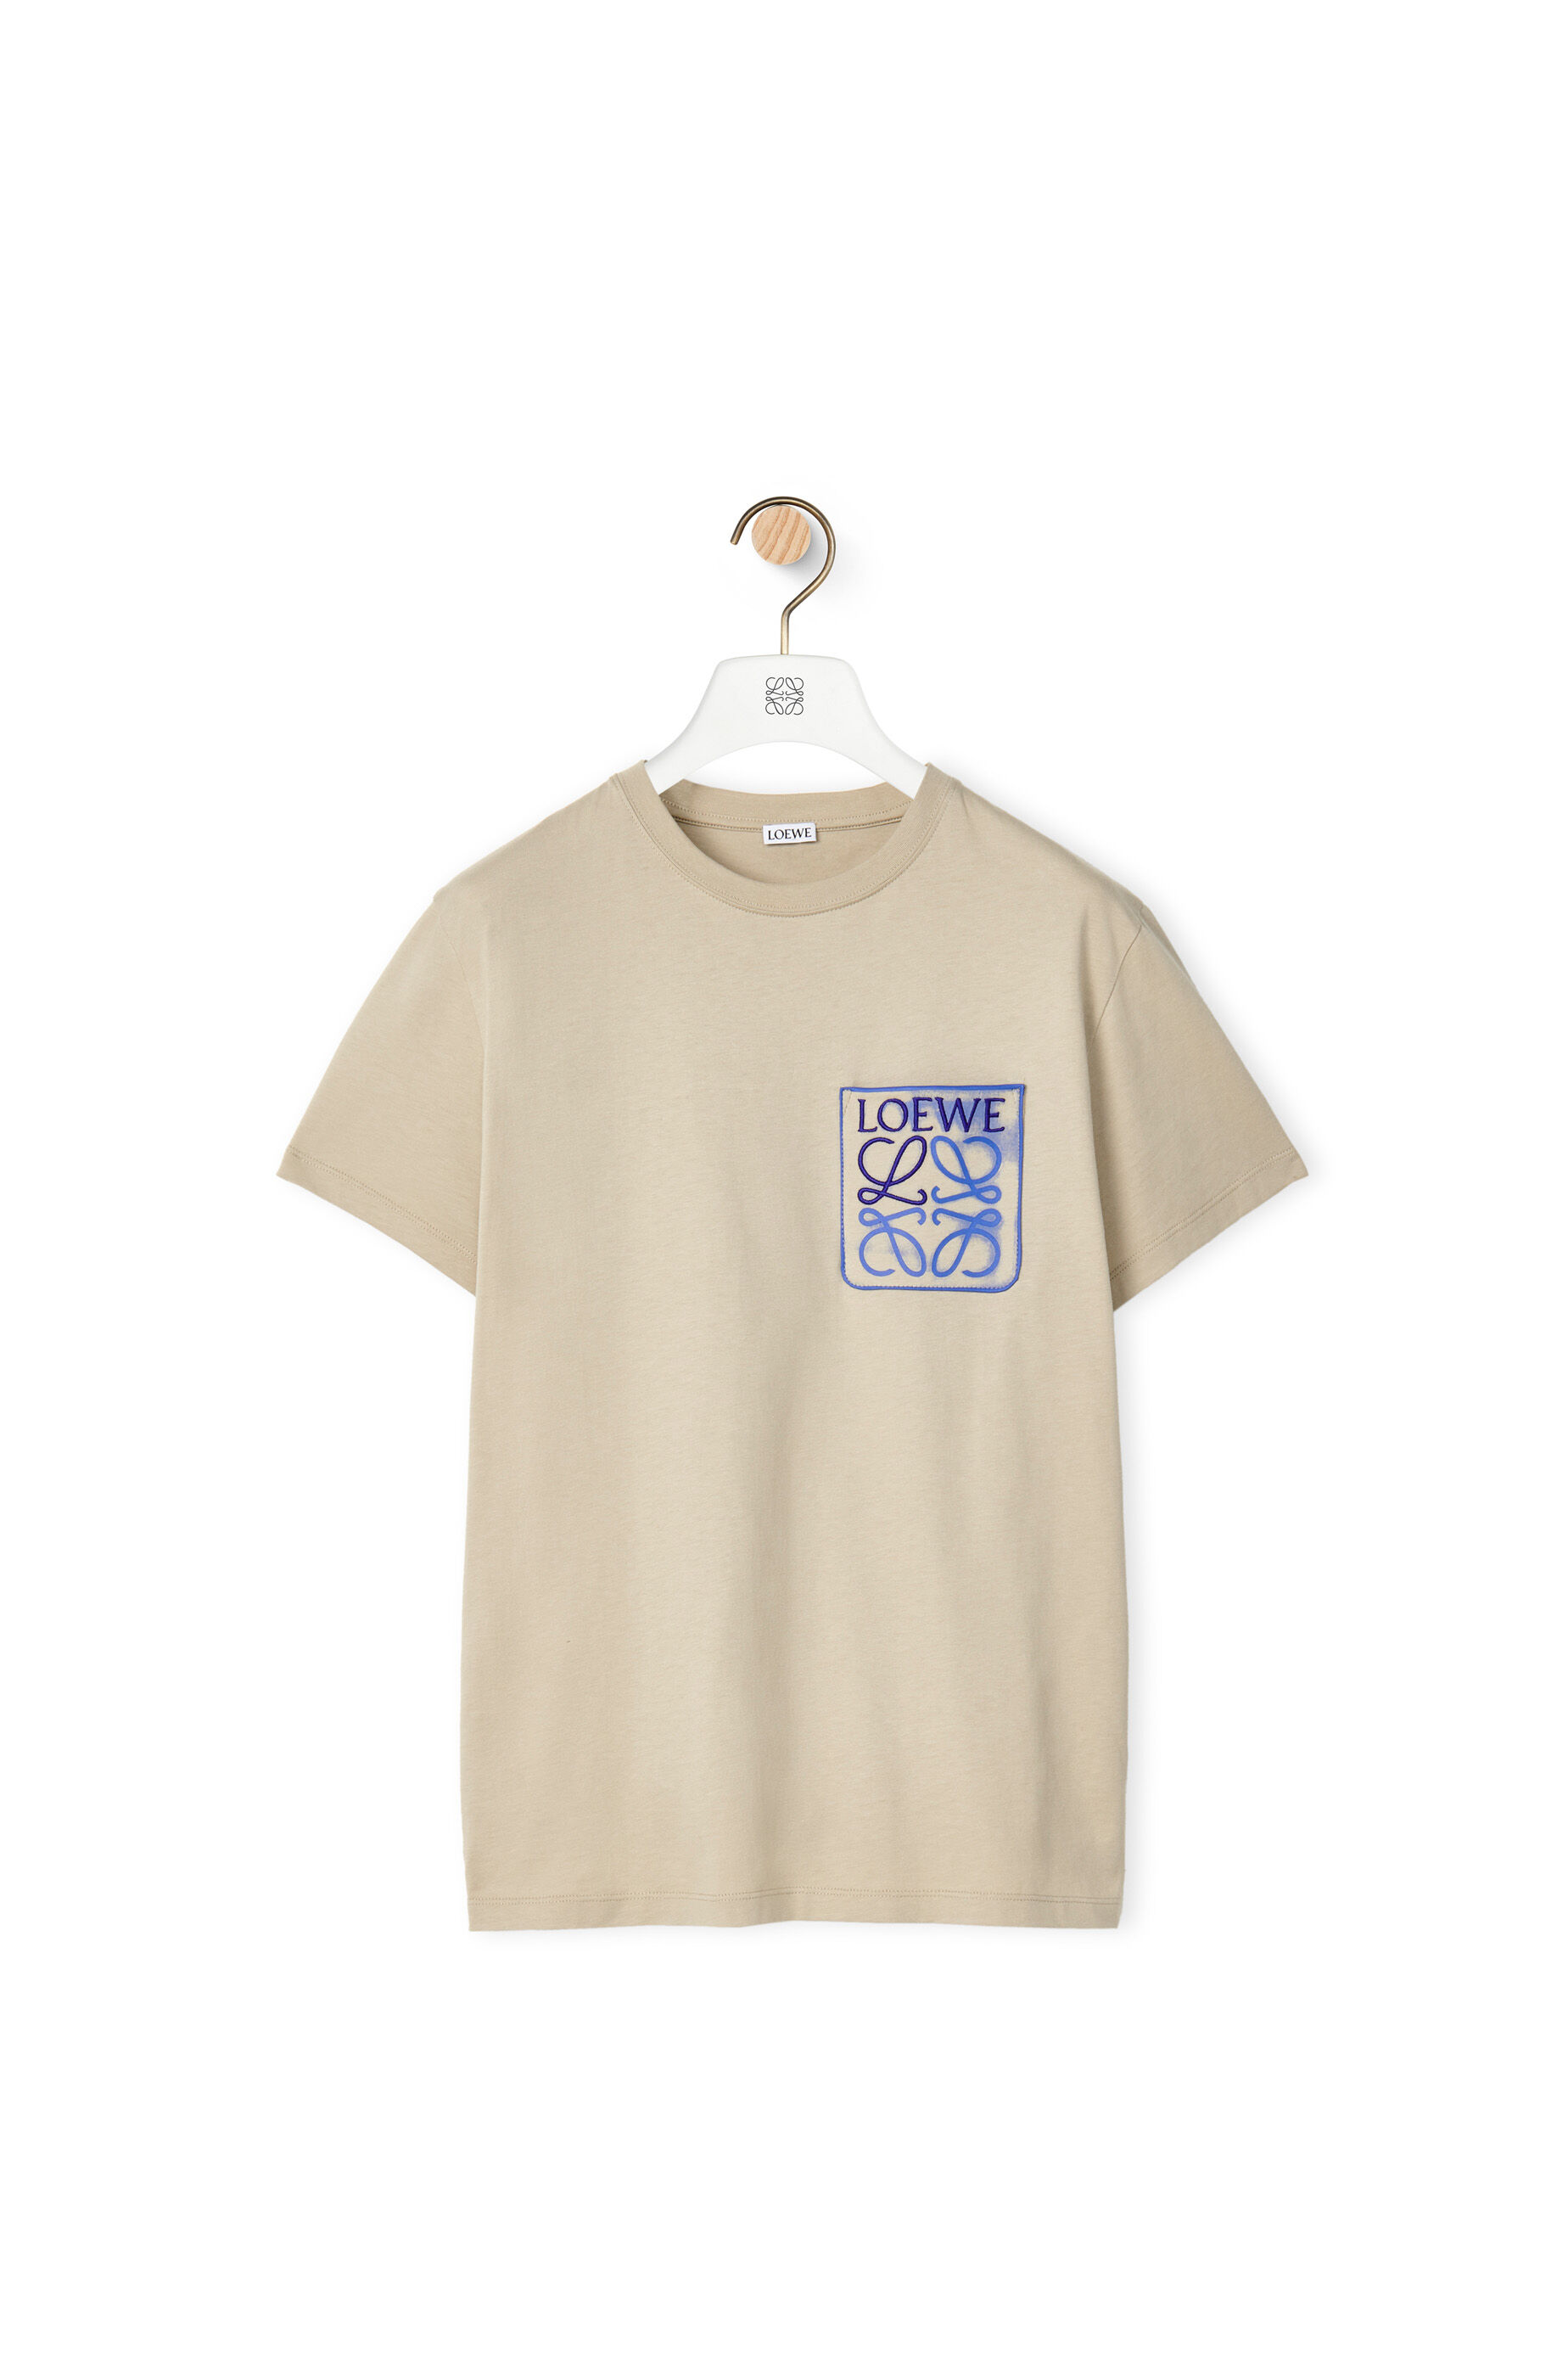 売れ筋商品 LOEWE Tシャツ - Tシャツ/カットソー(半袖/袖なし) - www 